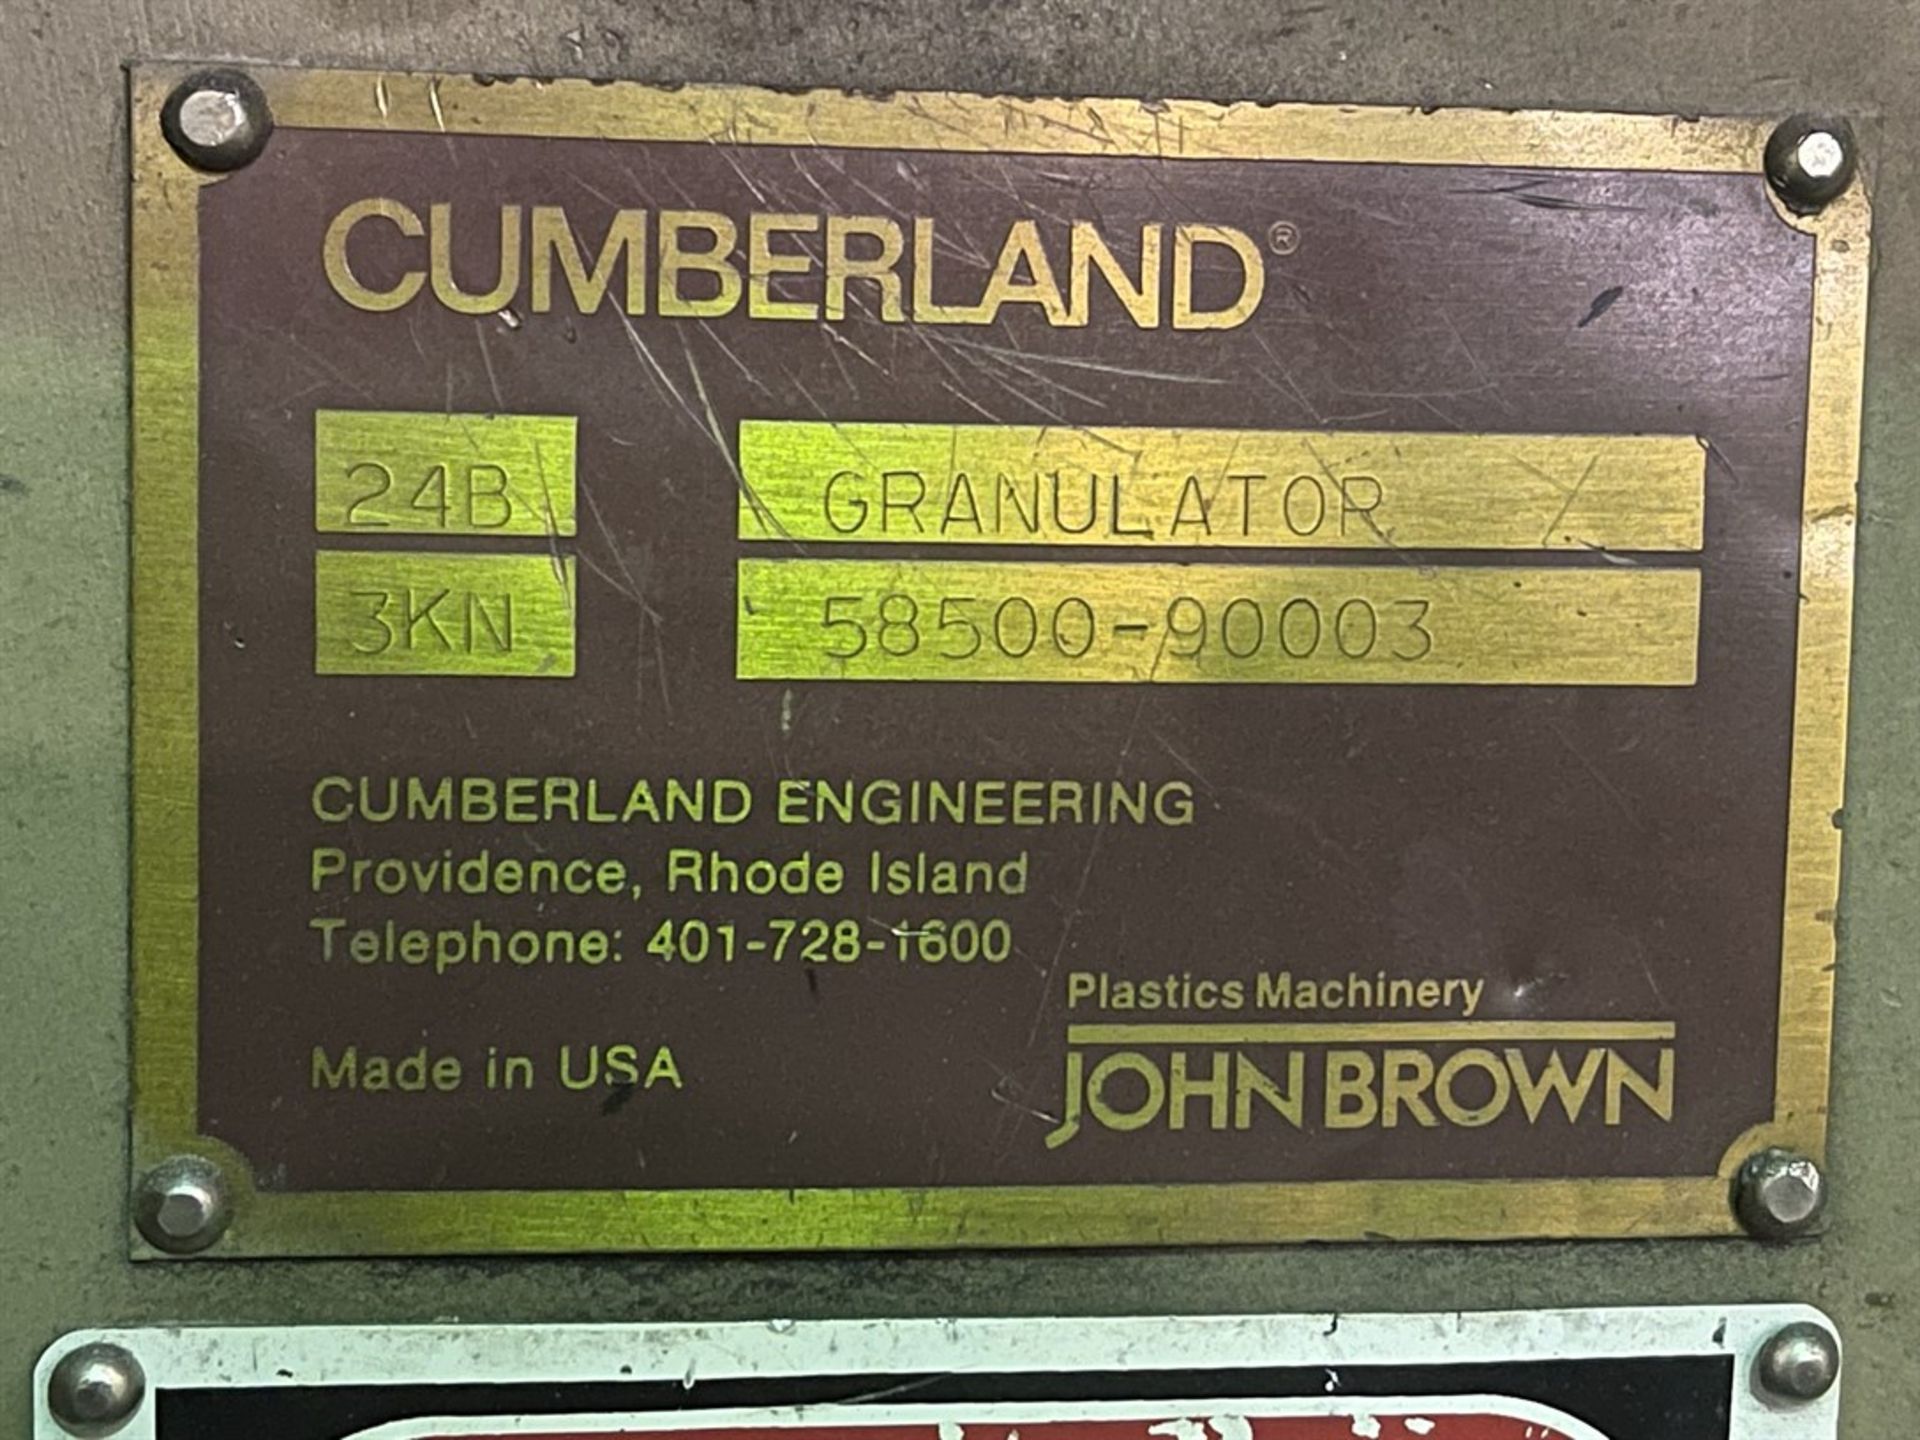 Cumberland 24B Granulator, s/n 58500-90003, 75 HP - Image 4 of 7